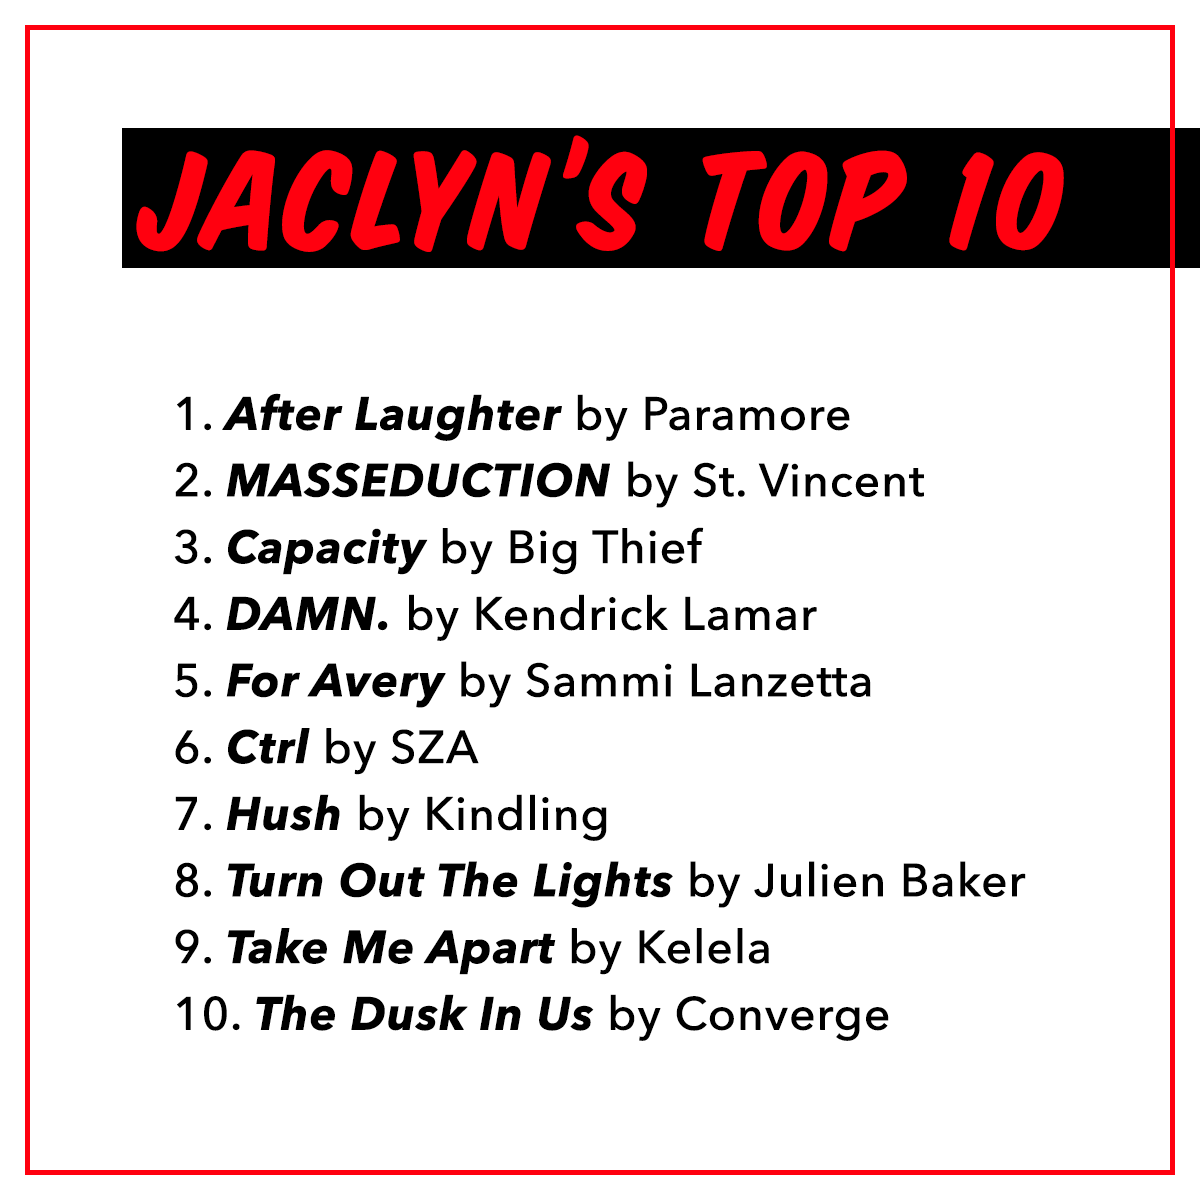 jaclyn's top 10.png